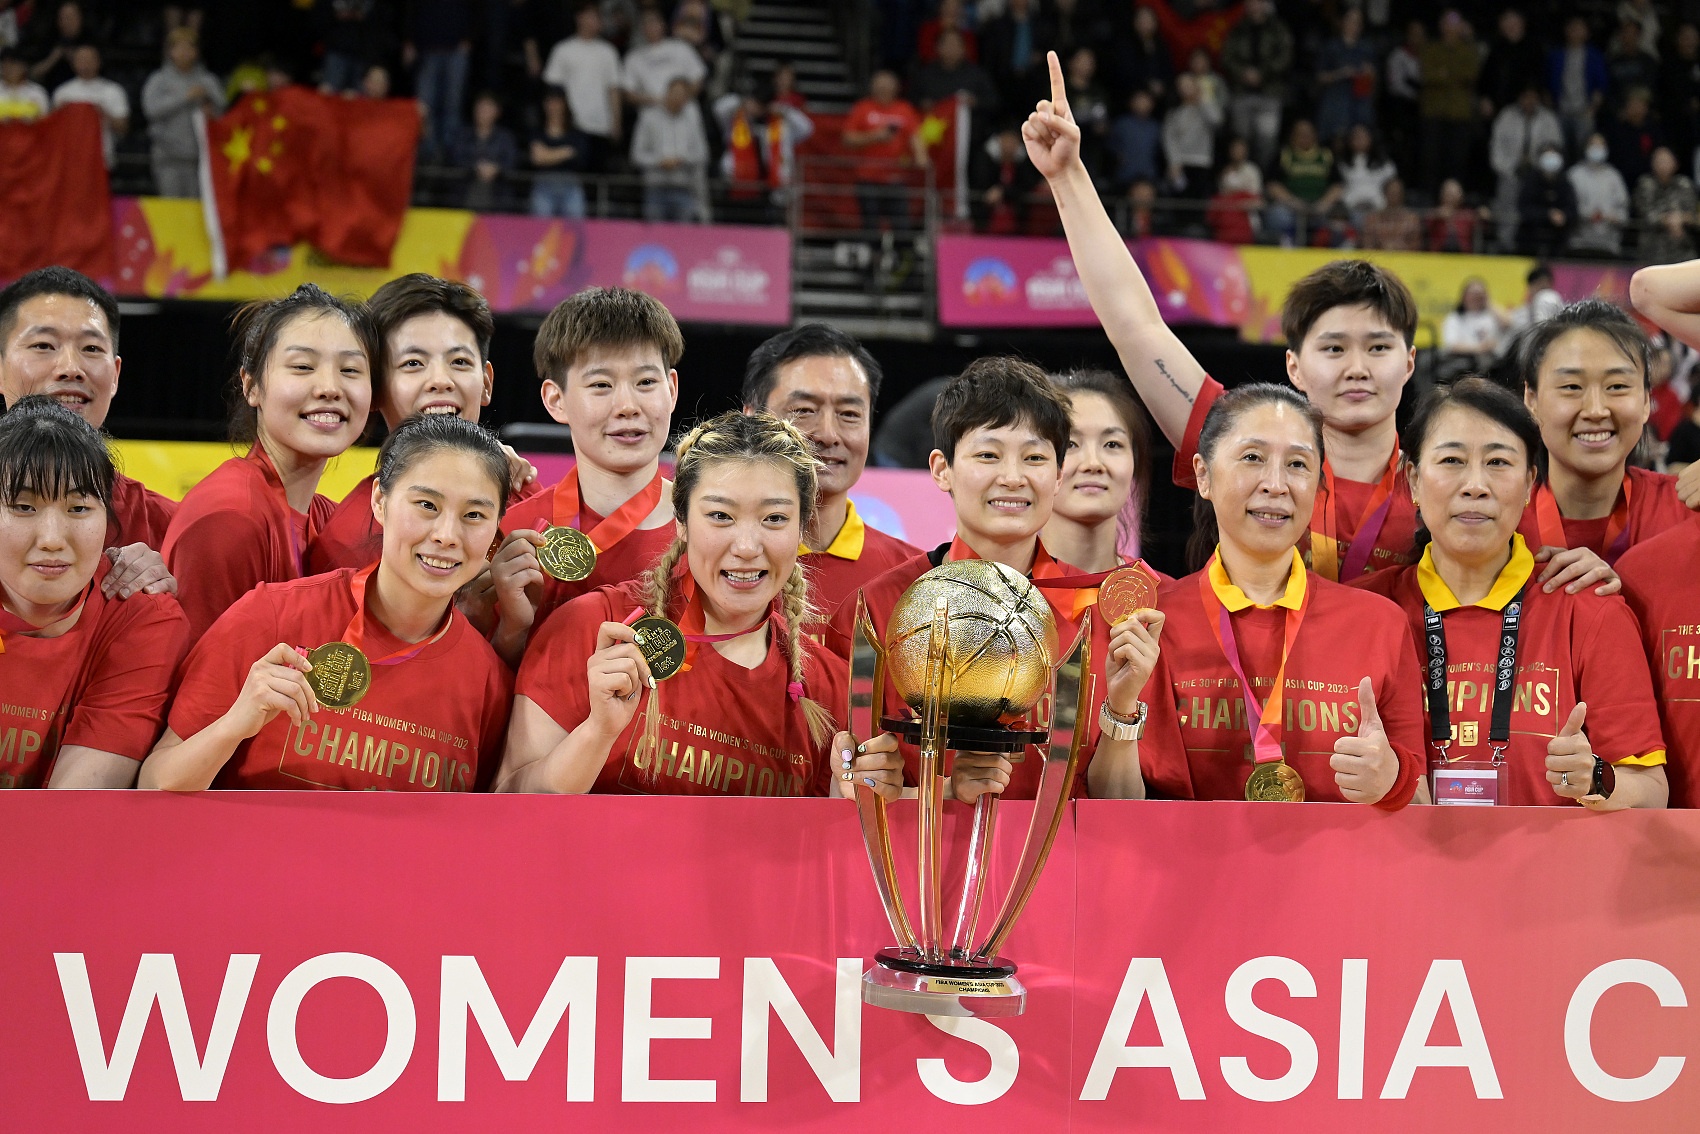 虽然巴黎奥运会还有1年多时间但人们有足够的理由去期待中国女篮